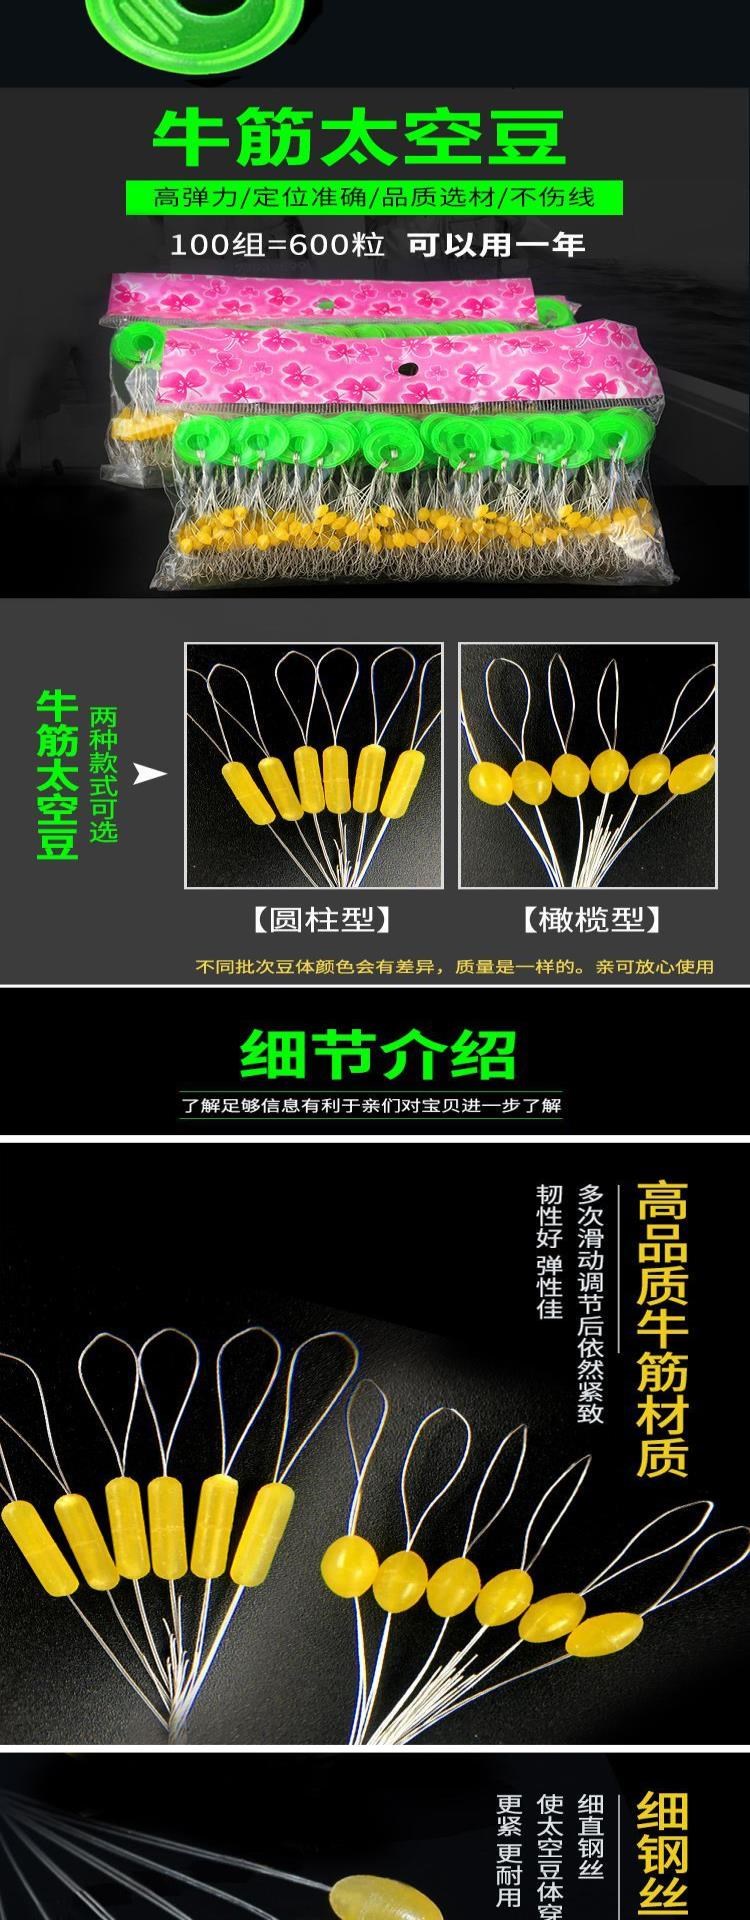 Đầu đồng dây câu thiết bị dây câu cá dây câu cá tàng hình đặc biệt màu đen hố thể thao không gian đậu 100 nhóm silicone - Thiết bị đánh cá